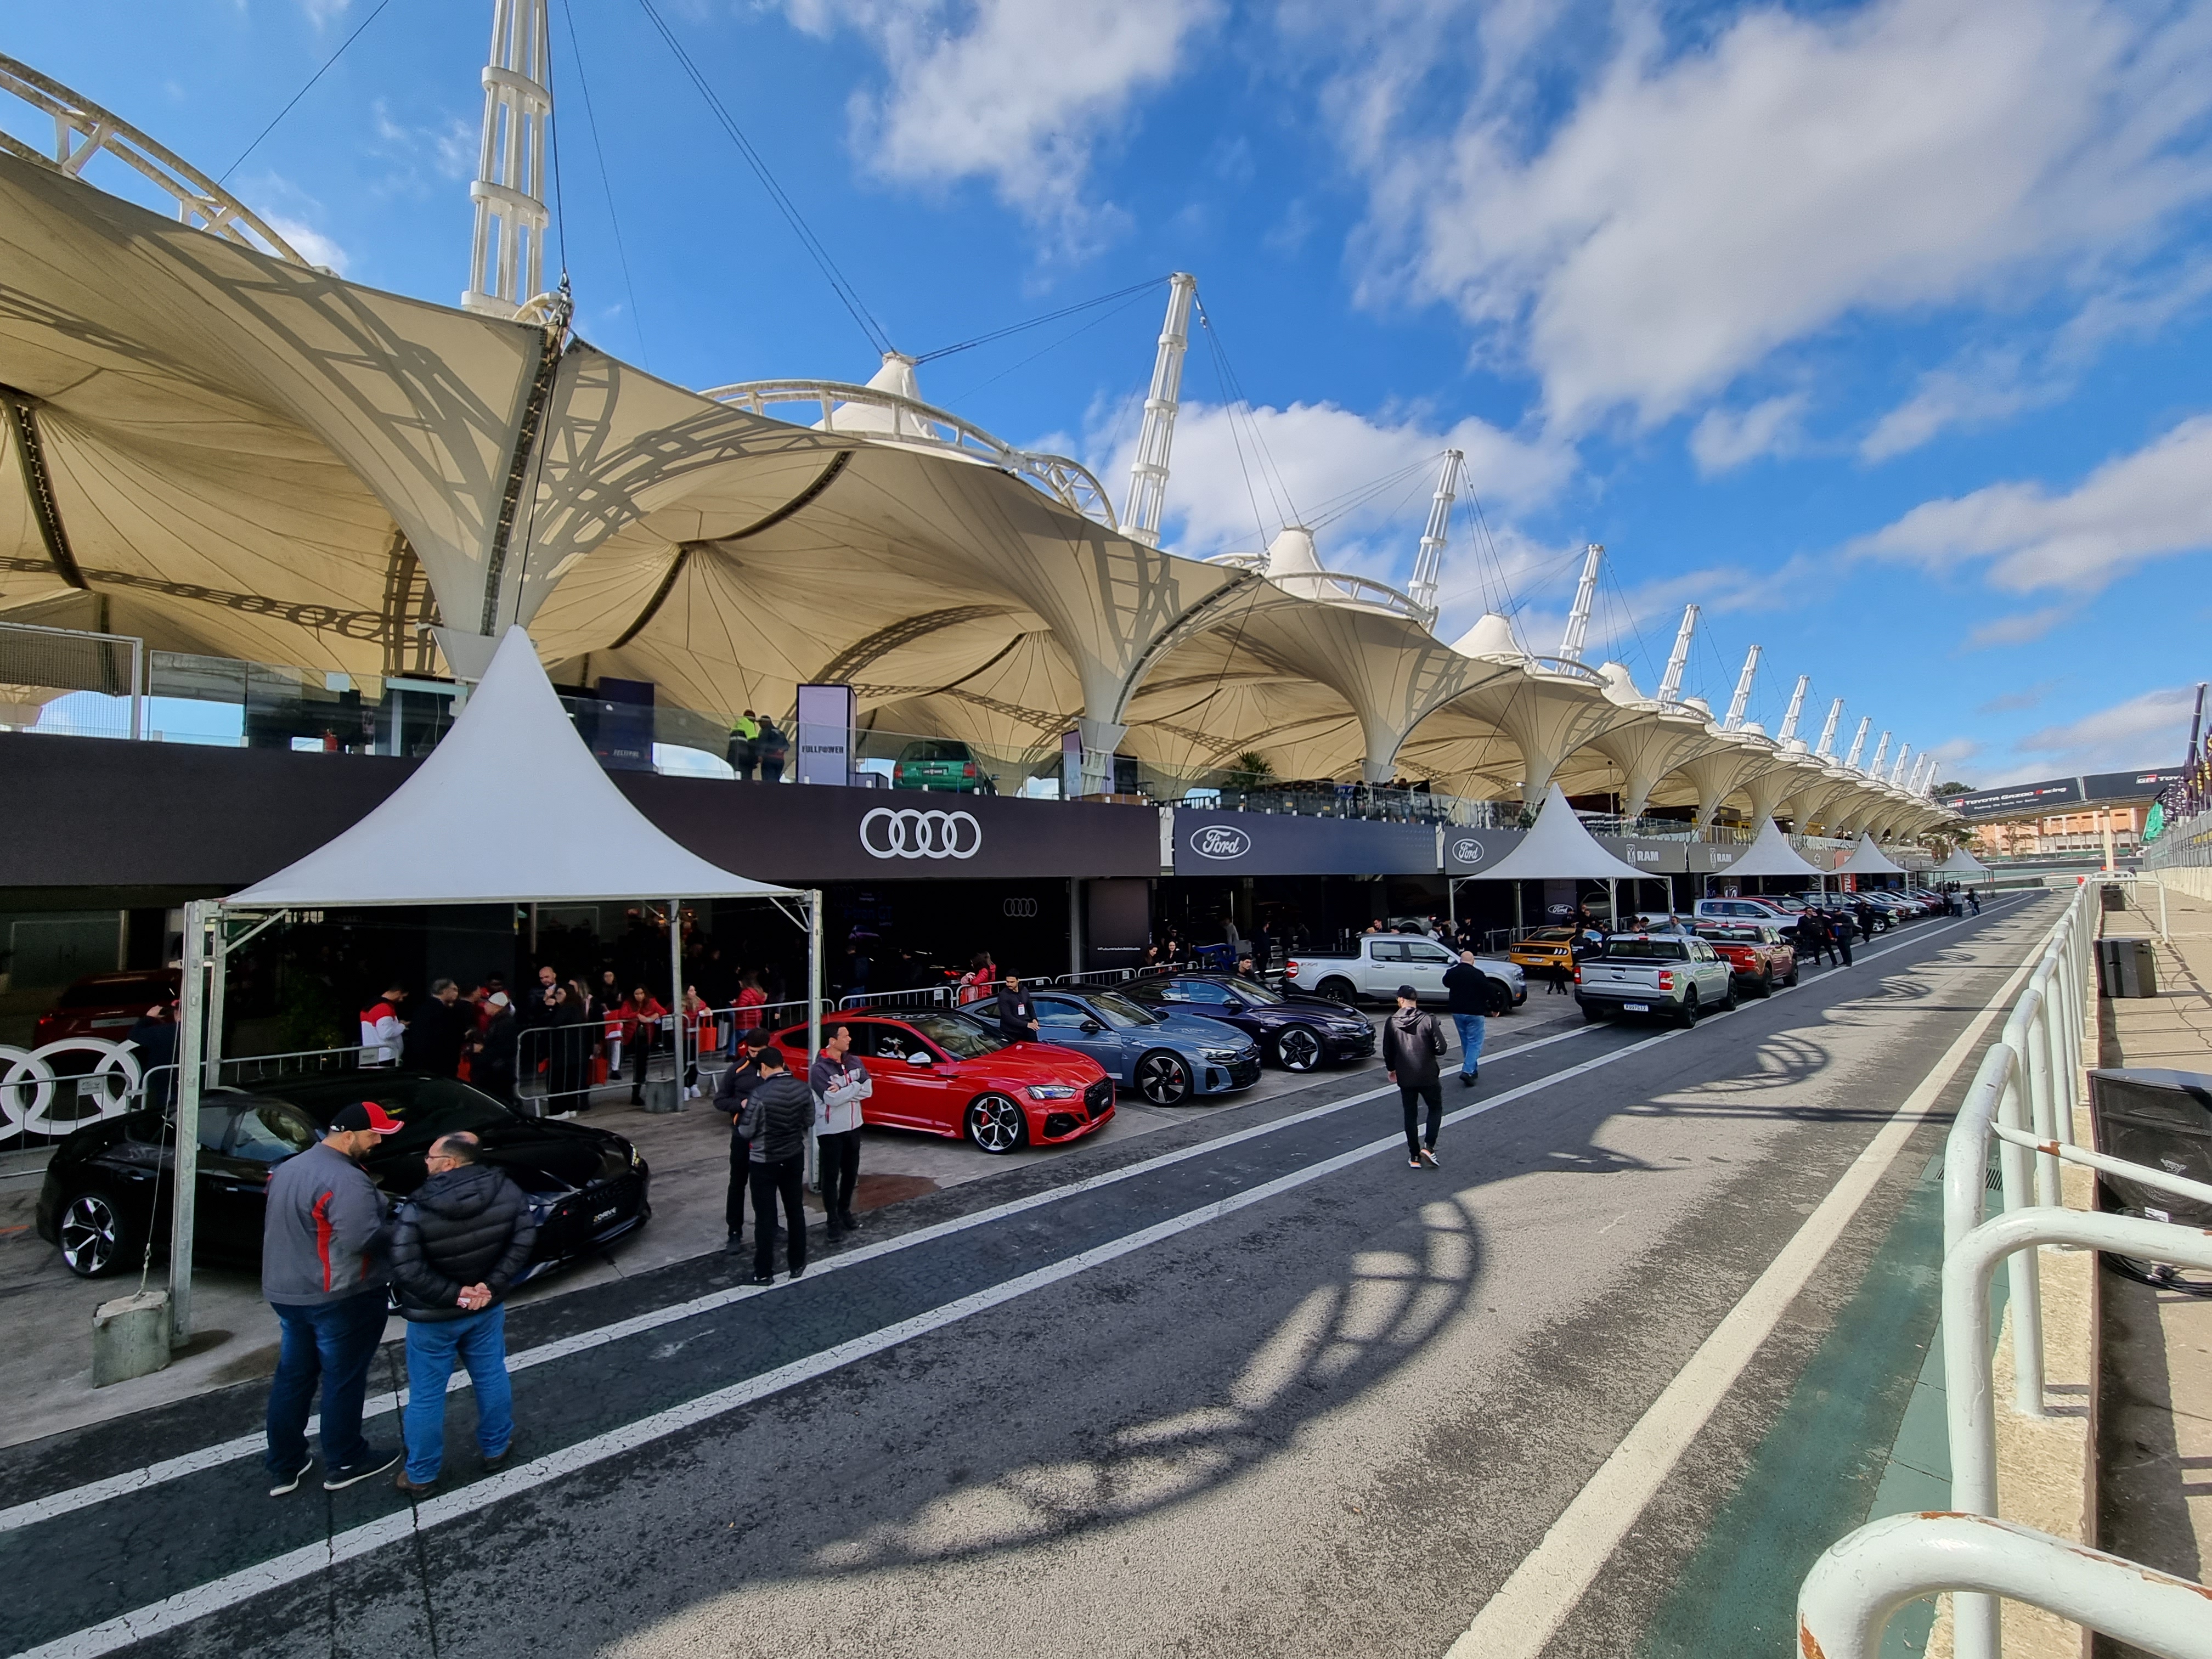 Festival Interlagos Carros 2023 acontece em SP com test-drive e lançamentos